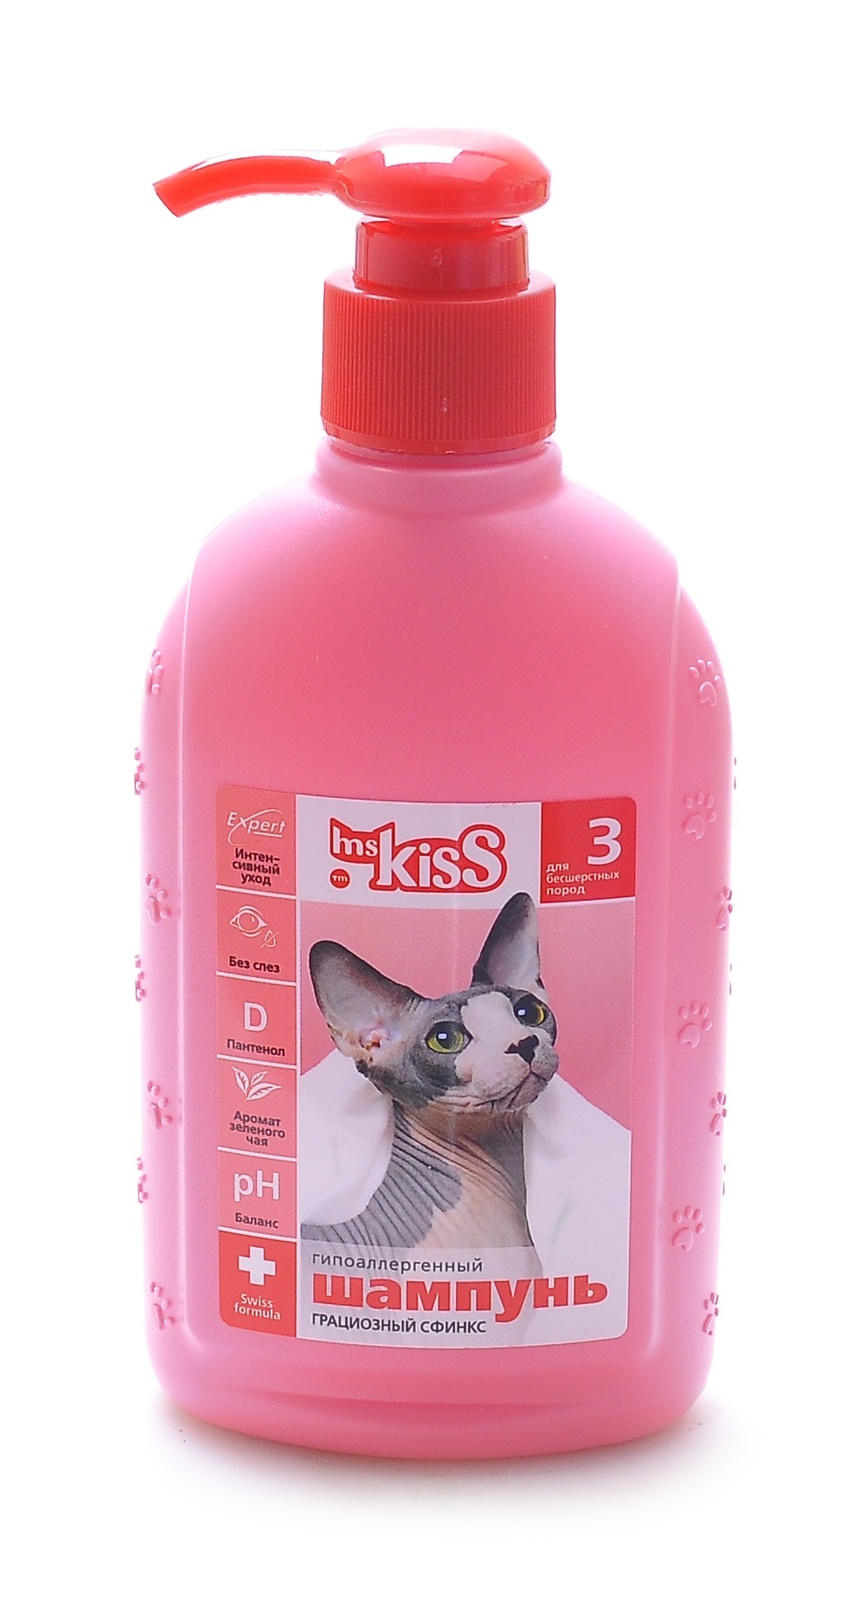 цена Ms.Kiss Ms.Kiss шампунь для бесшерстных пород Грациозный сфинкс (200 г)